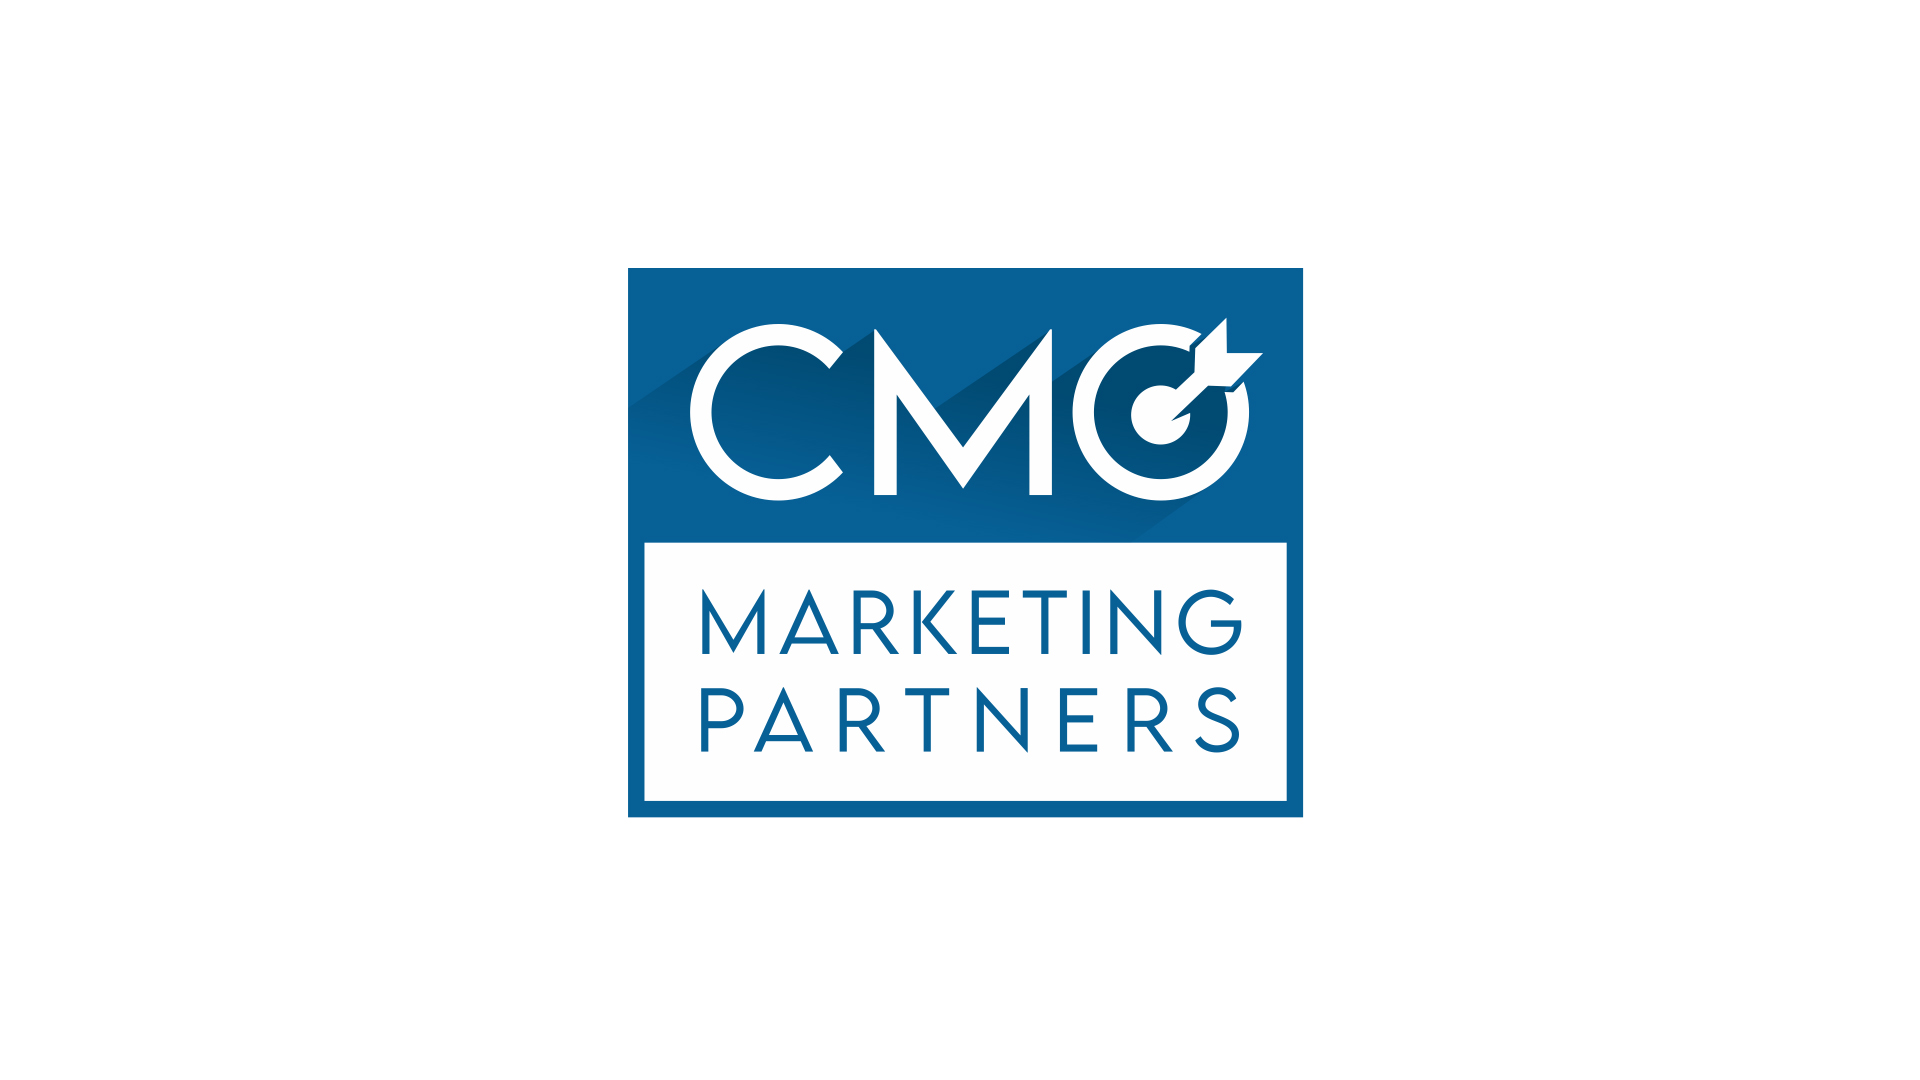 C. Socios de Marketing CMO (Bronce)